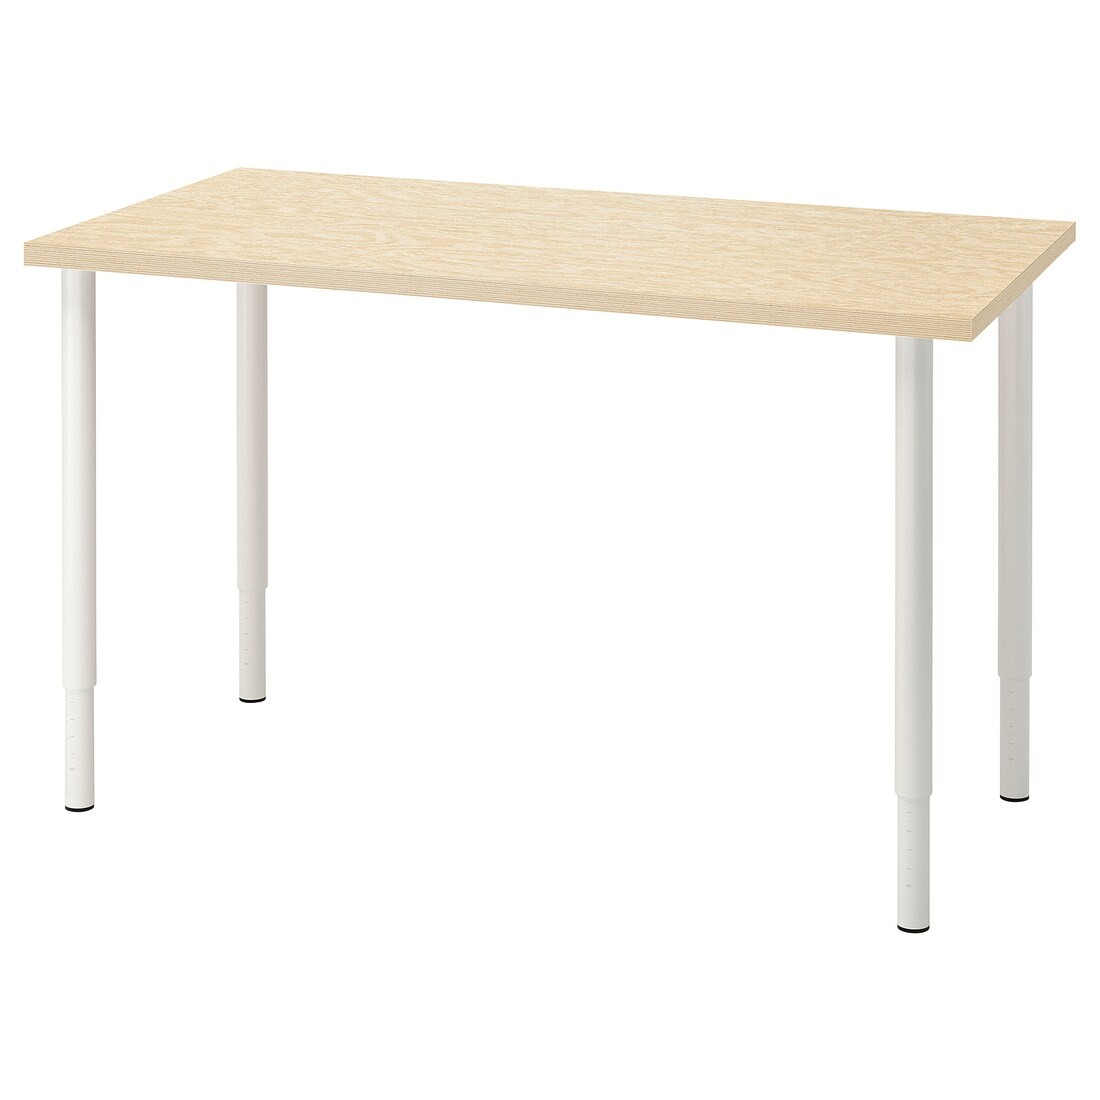 IKEA MITTCIRKEL / OLOV Письменный стол, яркий сосновый/белый эффект, 120x60 см 99508684 995.086.84